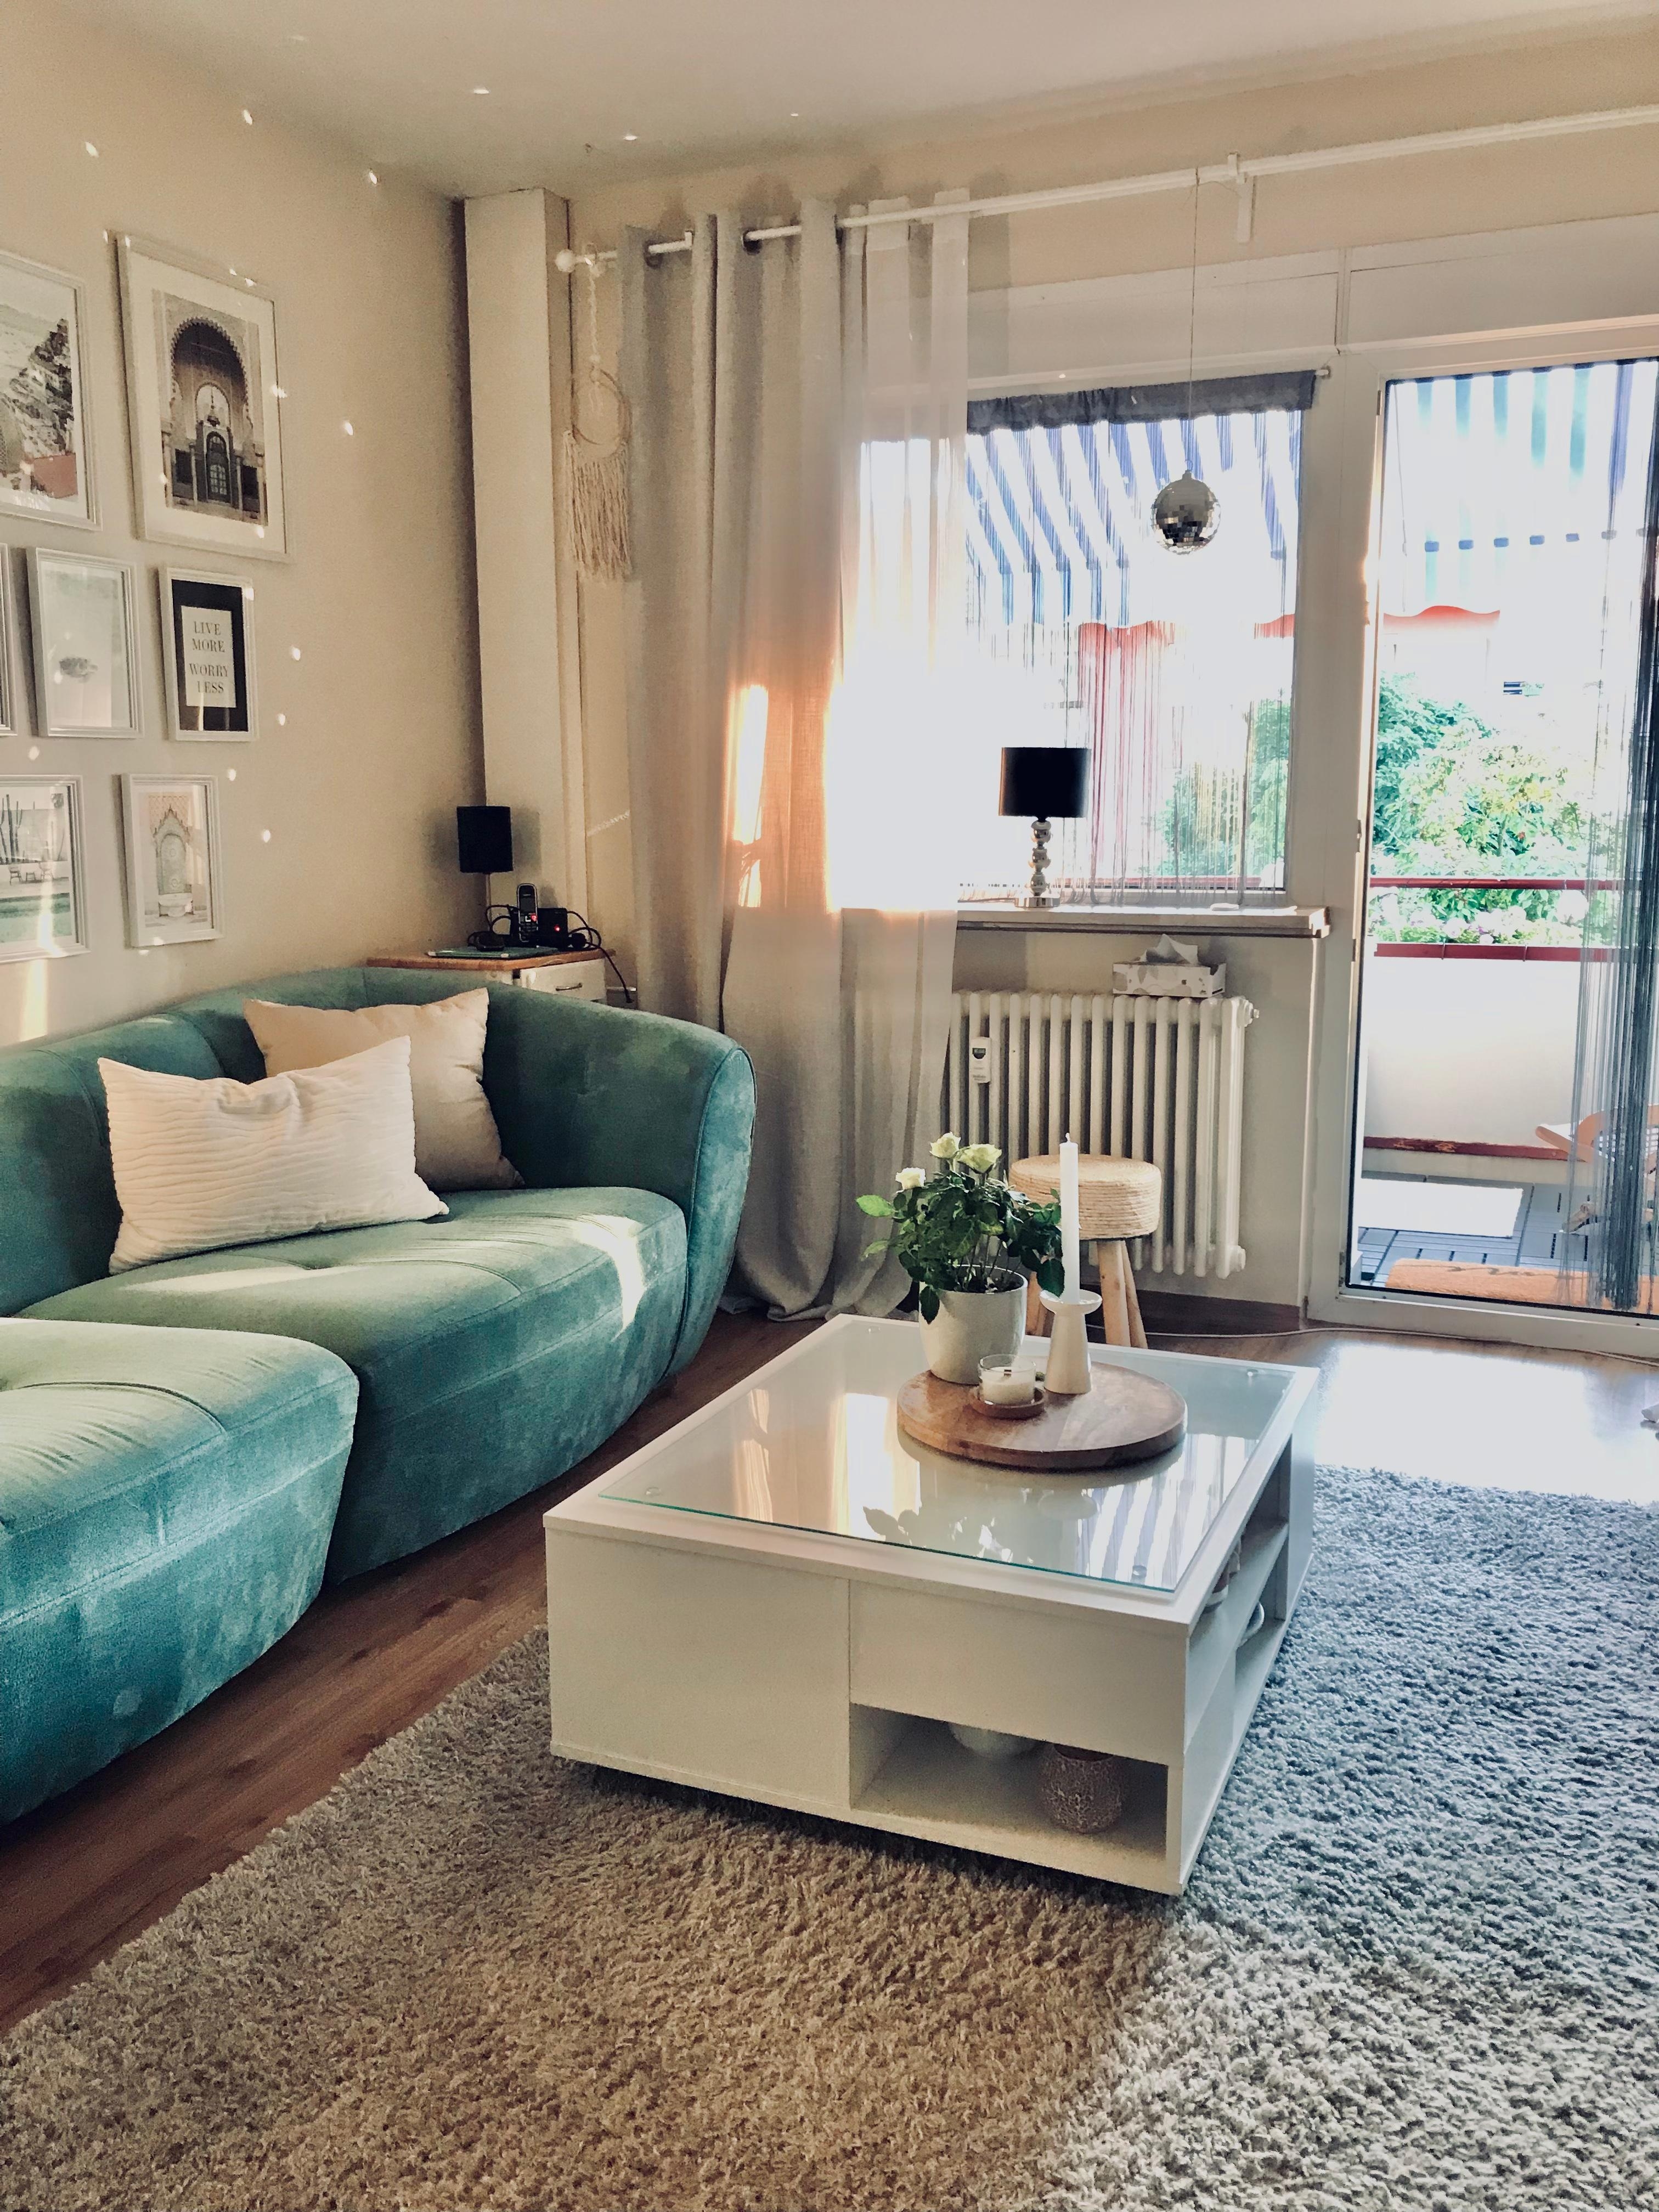 New in  Couchtisch 🤍
#couchtisch #white #home  #wohnzimmer #cozy #couch #teppich #kissen #balkon #vorhang #bilder 